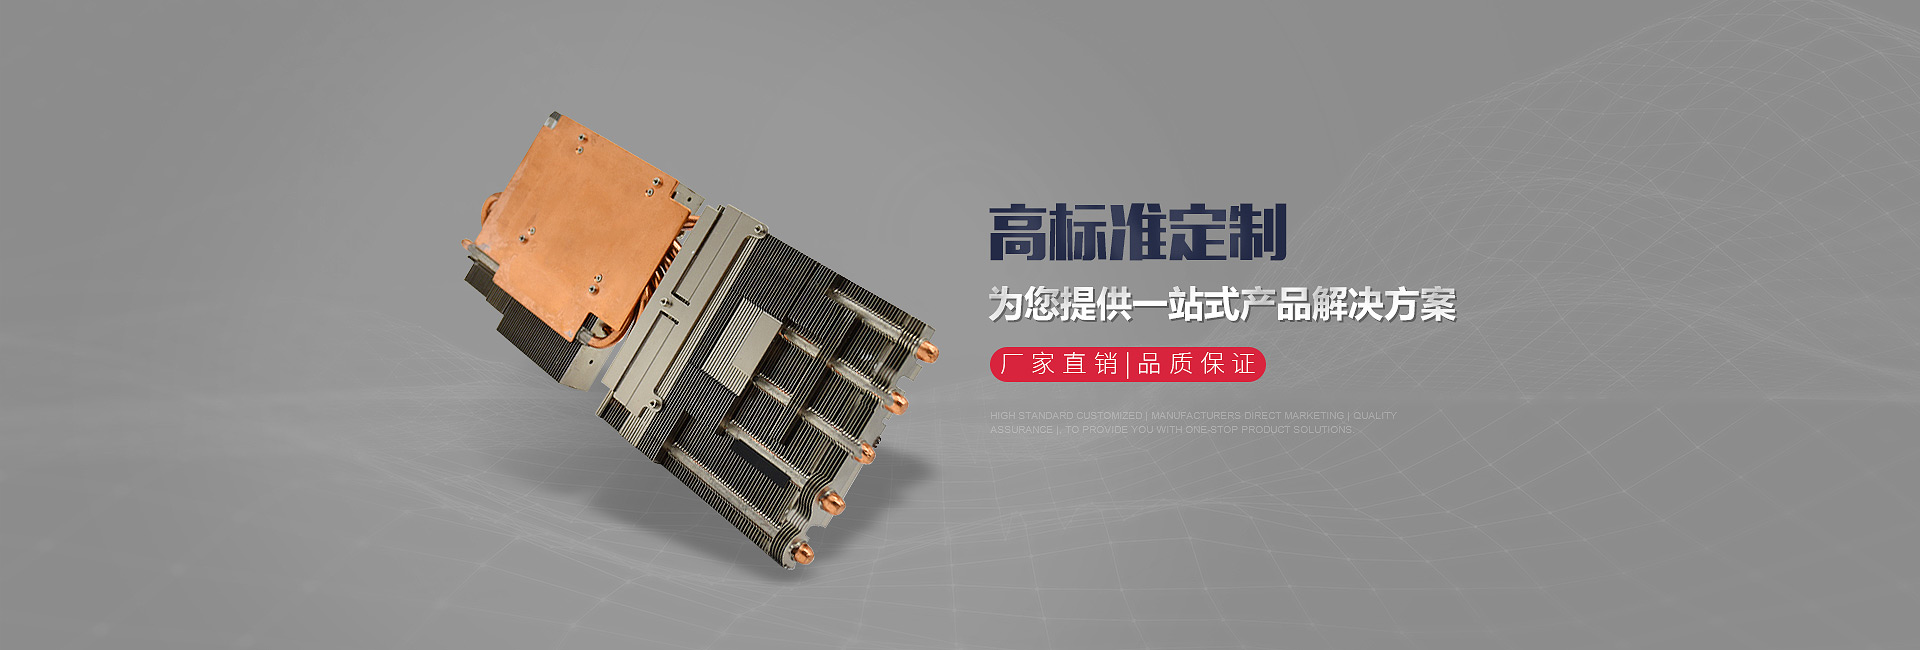 GTX 1080显卡散热器焊接模组